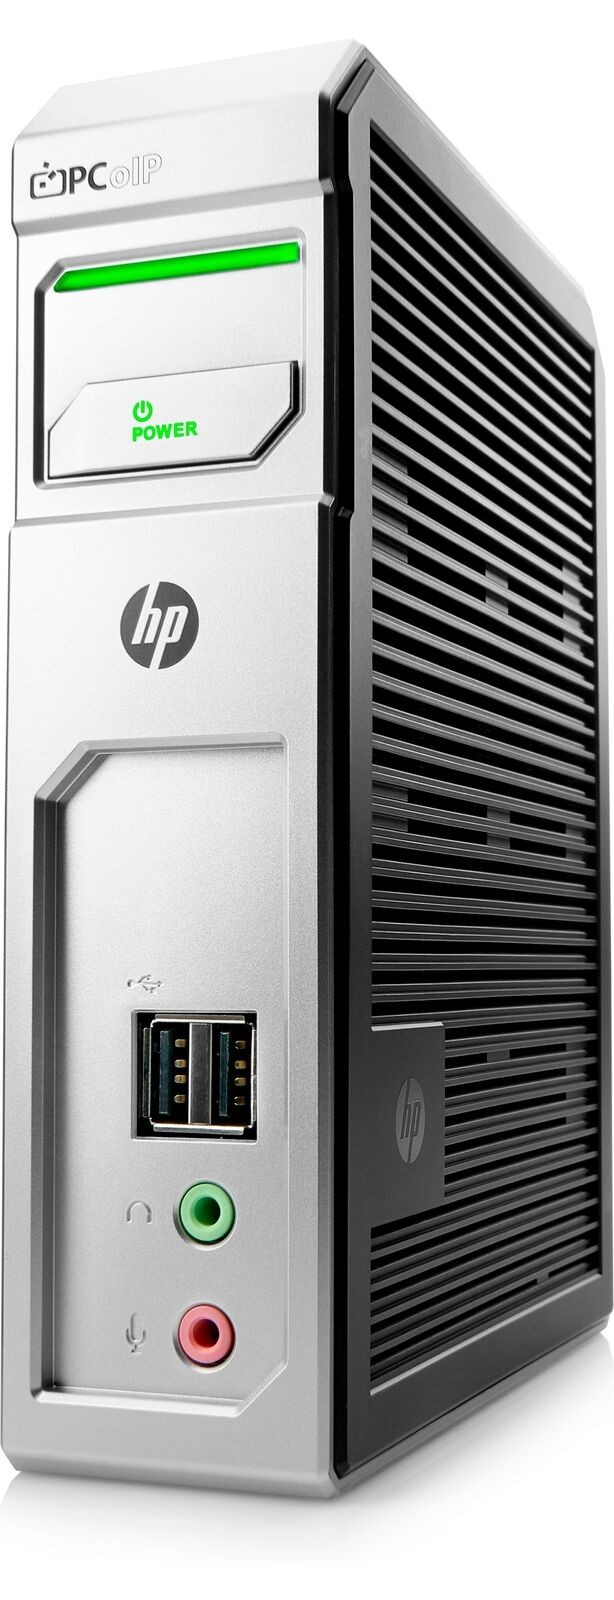 HP Quad-Display t310Q  Zero Client Tera2140 512MB 32MB US V0C66UA